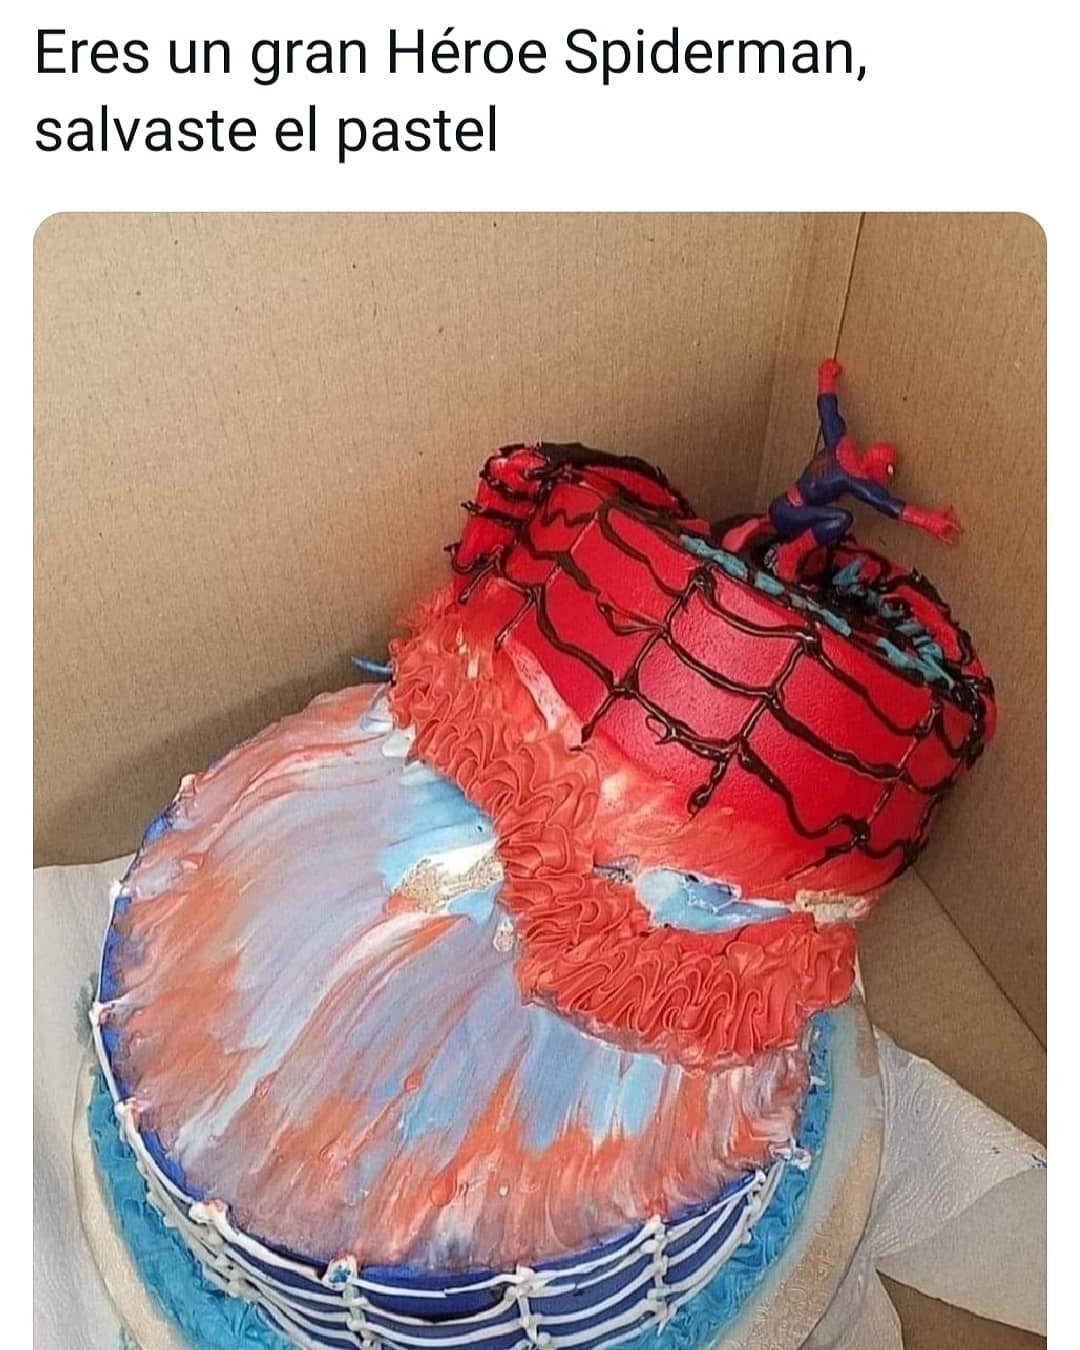 Eres un gran Héroe Spiderman, salvaste el pastel.